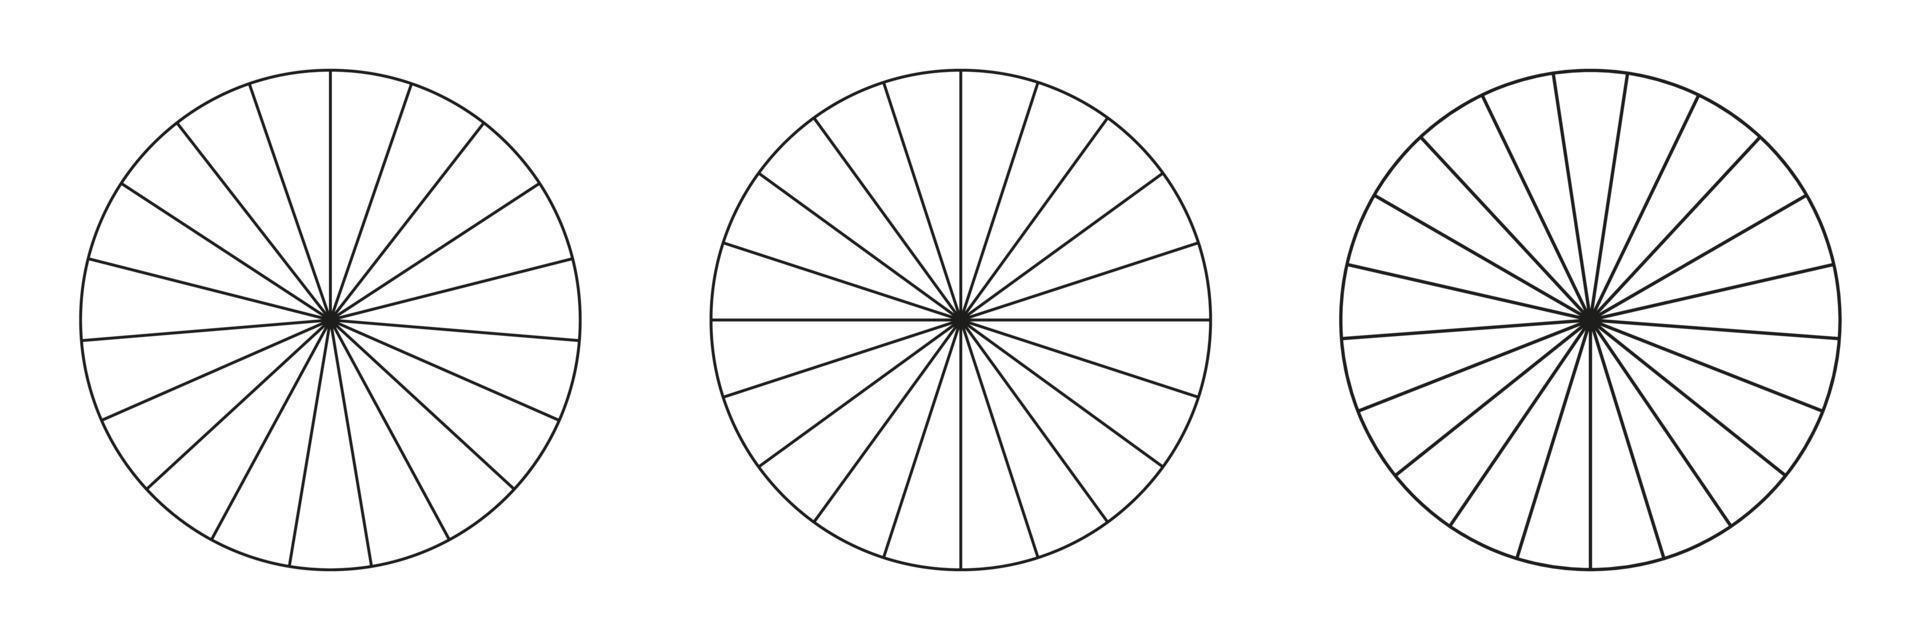 Kreise unterteilt in 19,20,21 Segmente. Runde Pizza- oder Kuchenformen, die in gleiche Scheiben geschnitten werden. Gliederungsstil festgelegt. einfache Diagrammsammlung. vektor